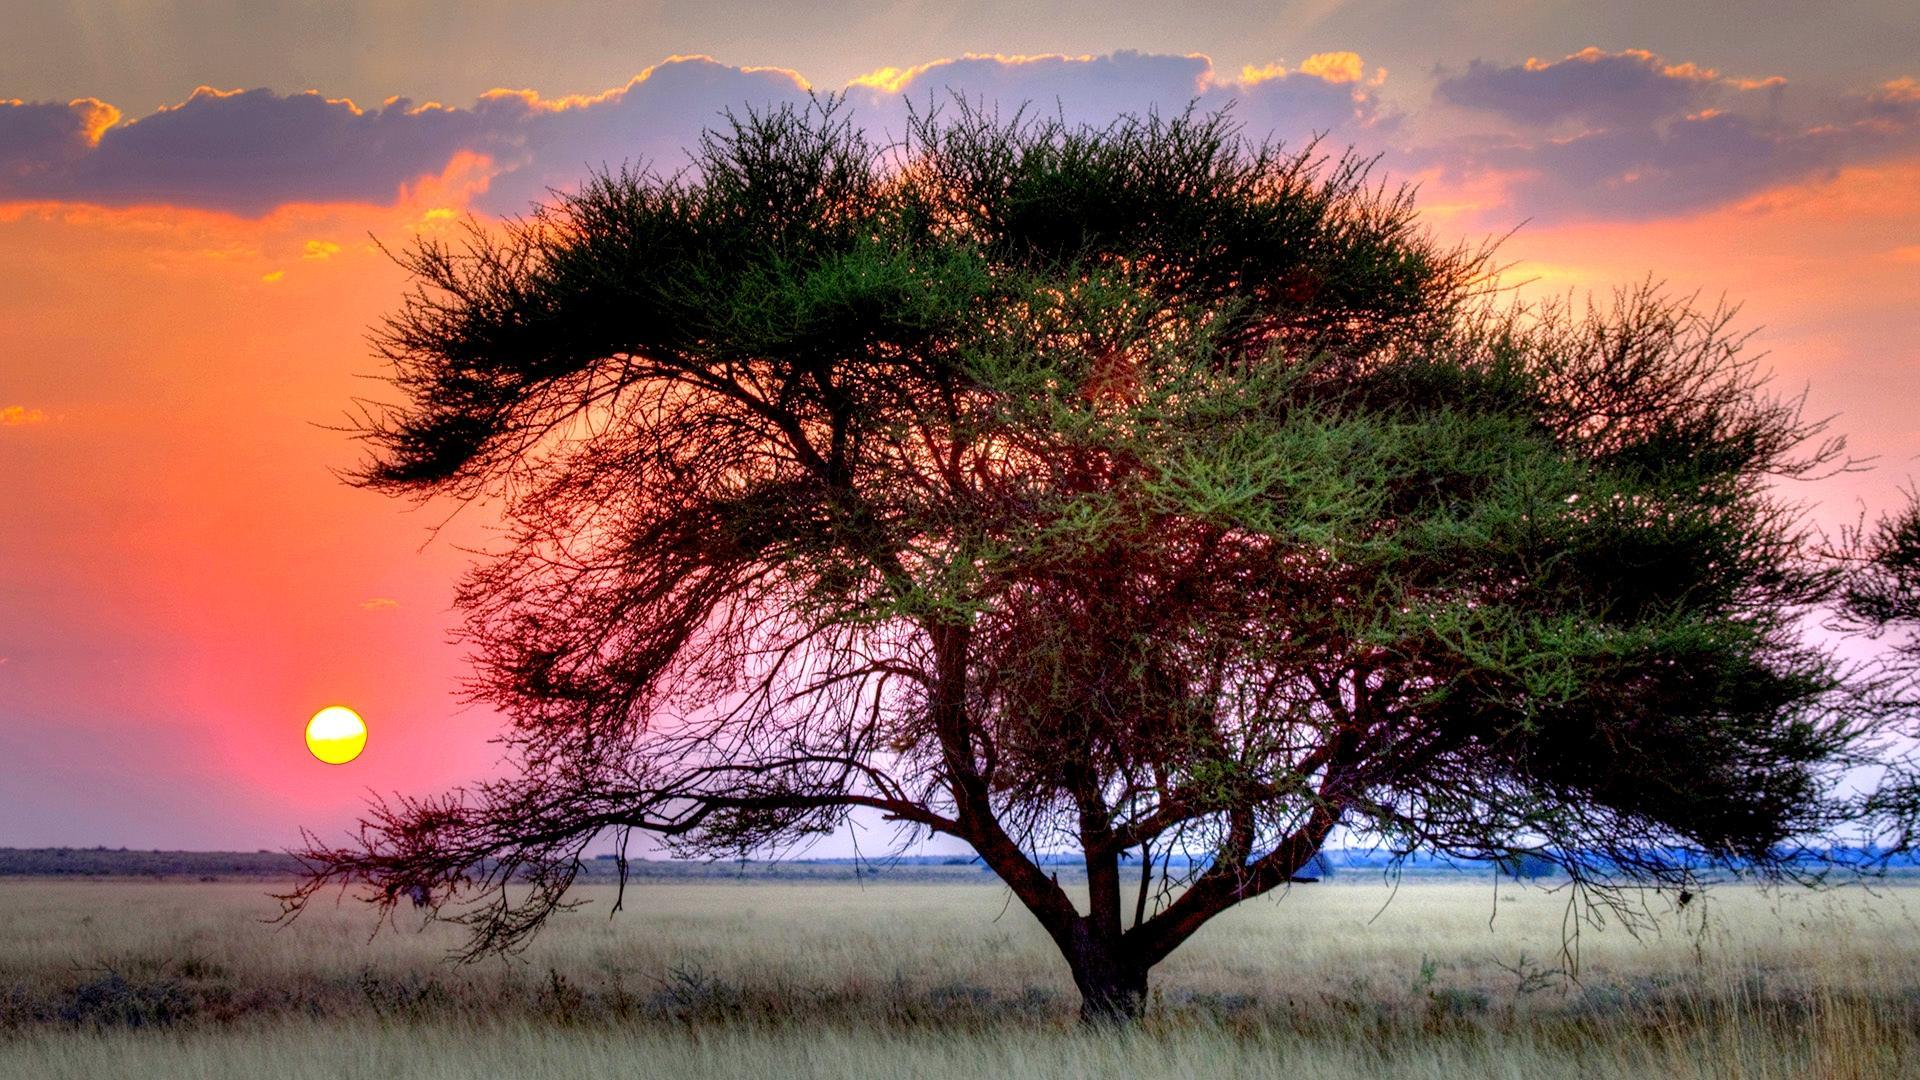 Sunset Over Kalahari HD Desktop Wallpaper Widescreen High